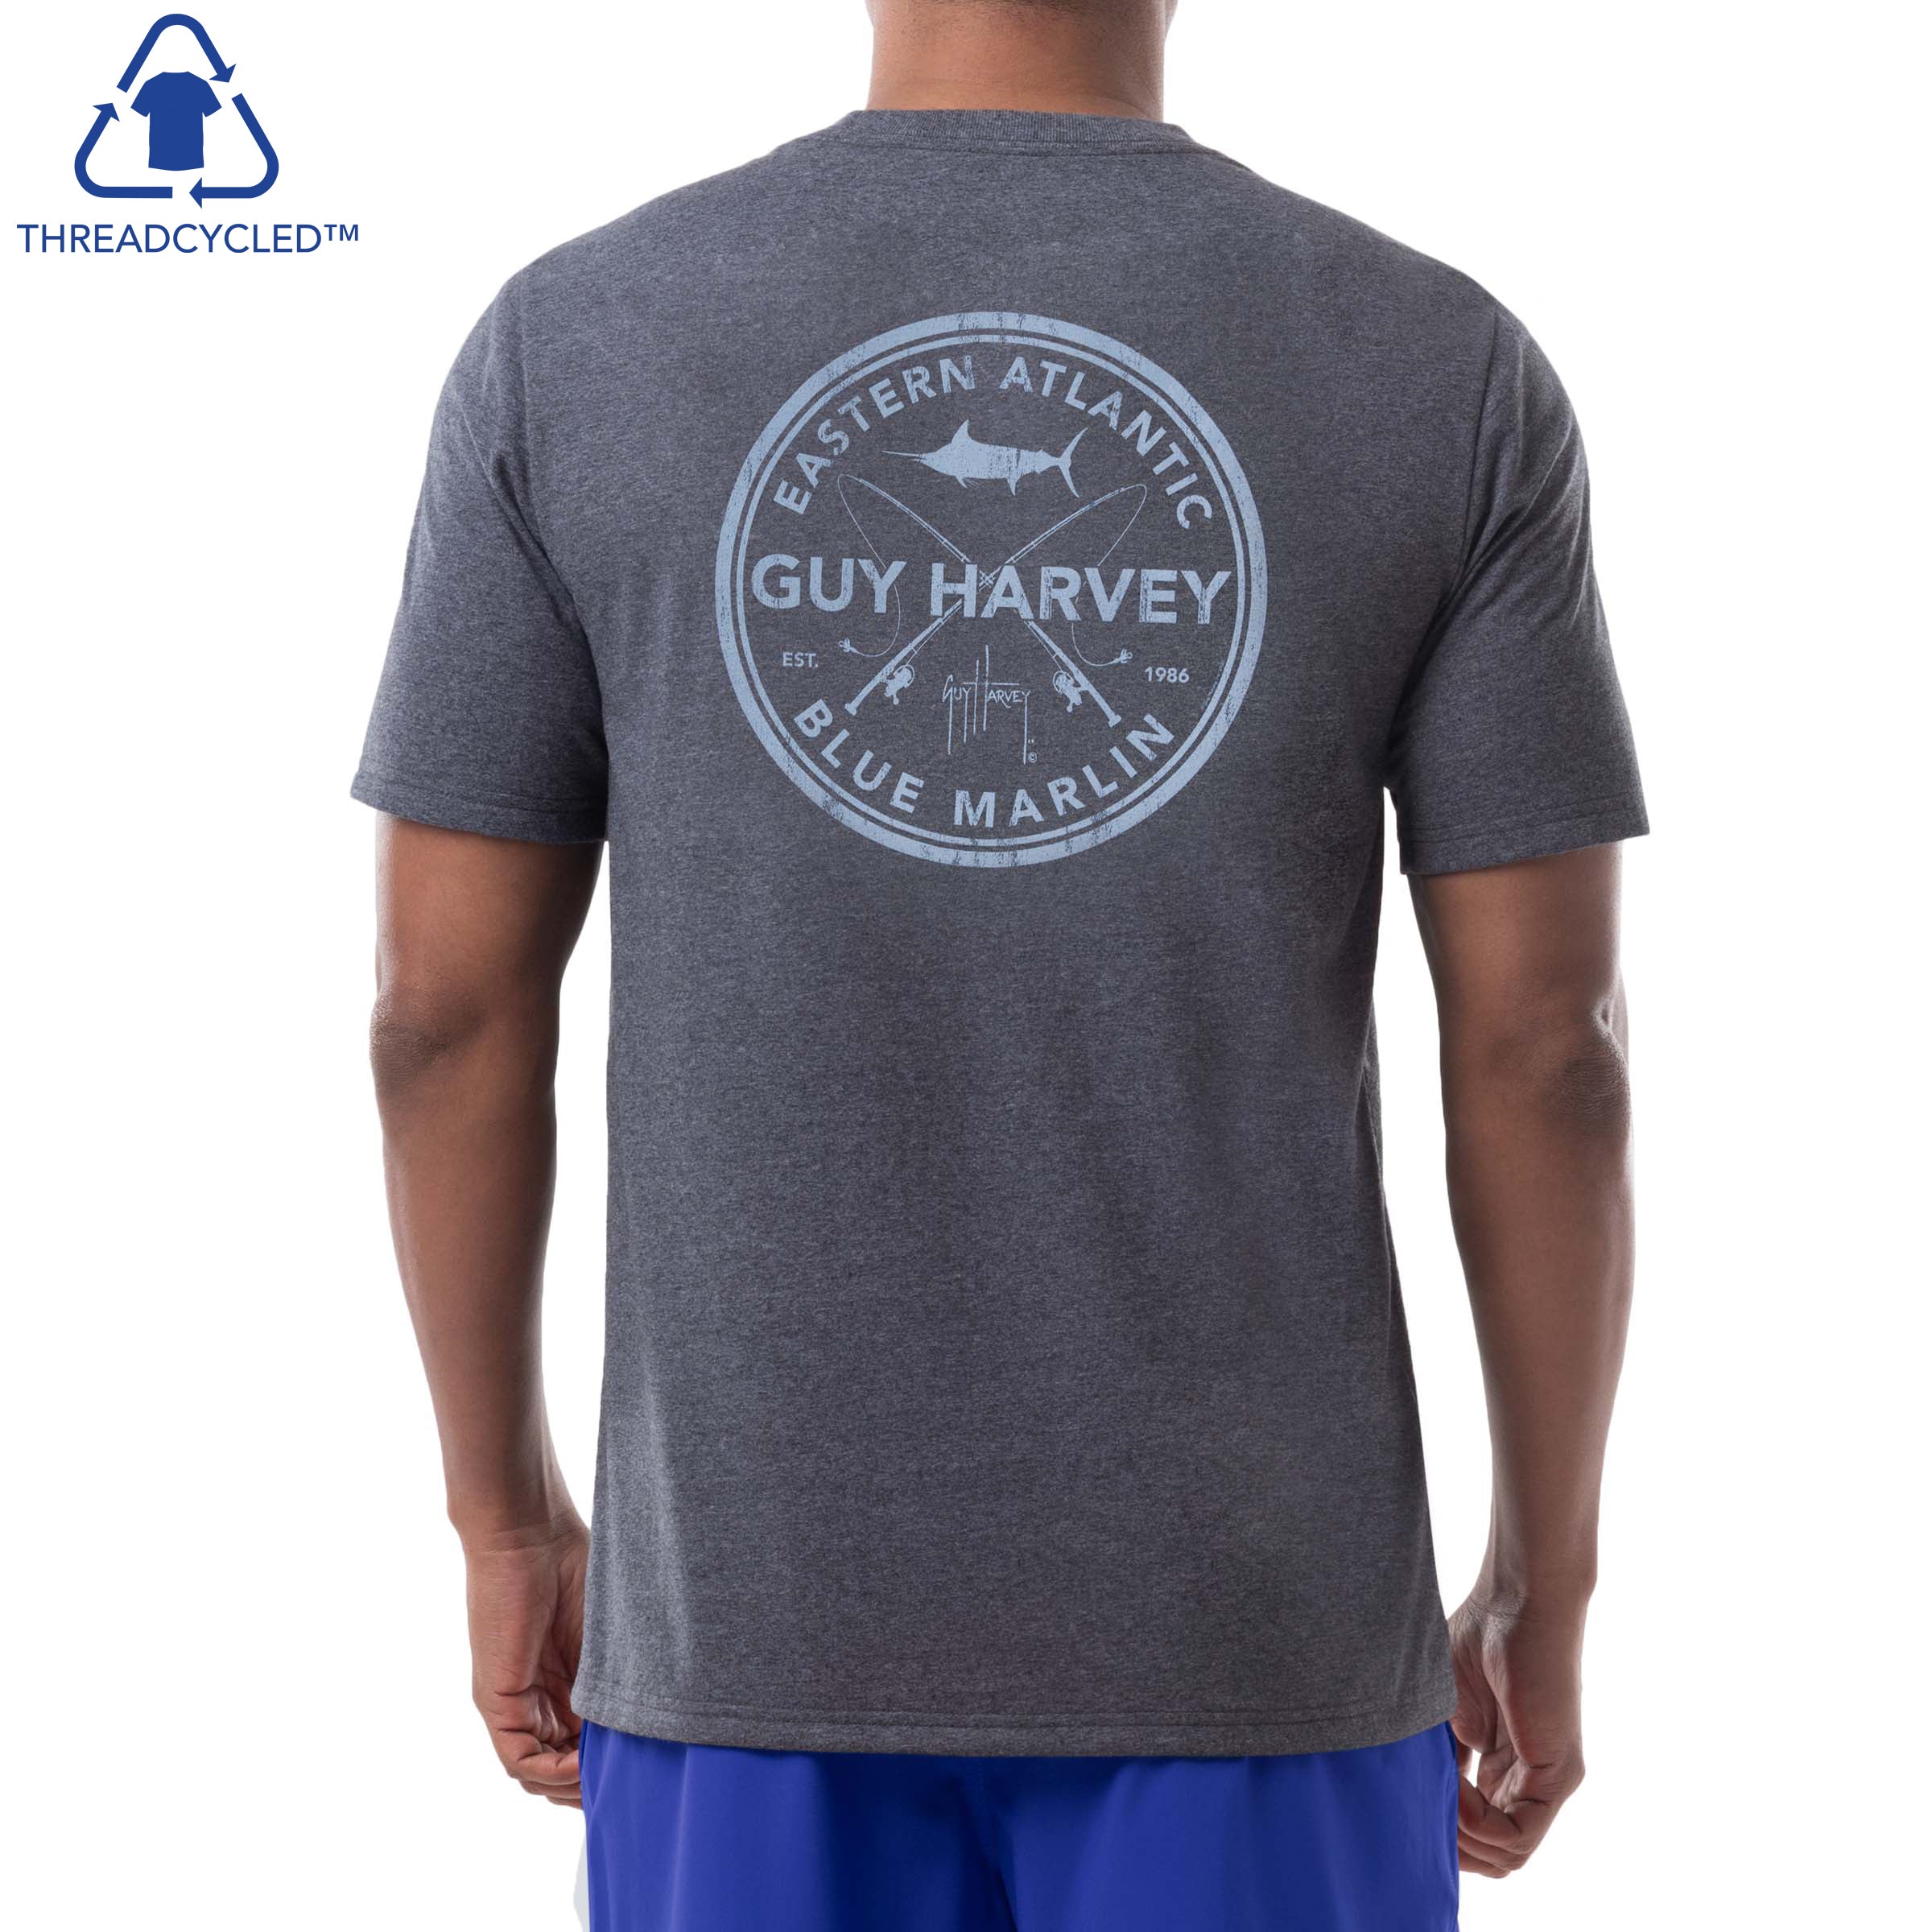  Guy Harvey Boy's Short Sleeve T-Shirt, Tomato/Marlin